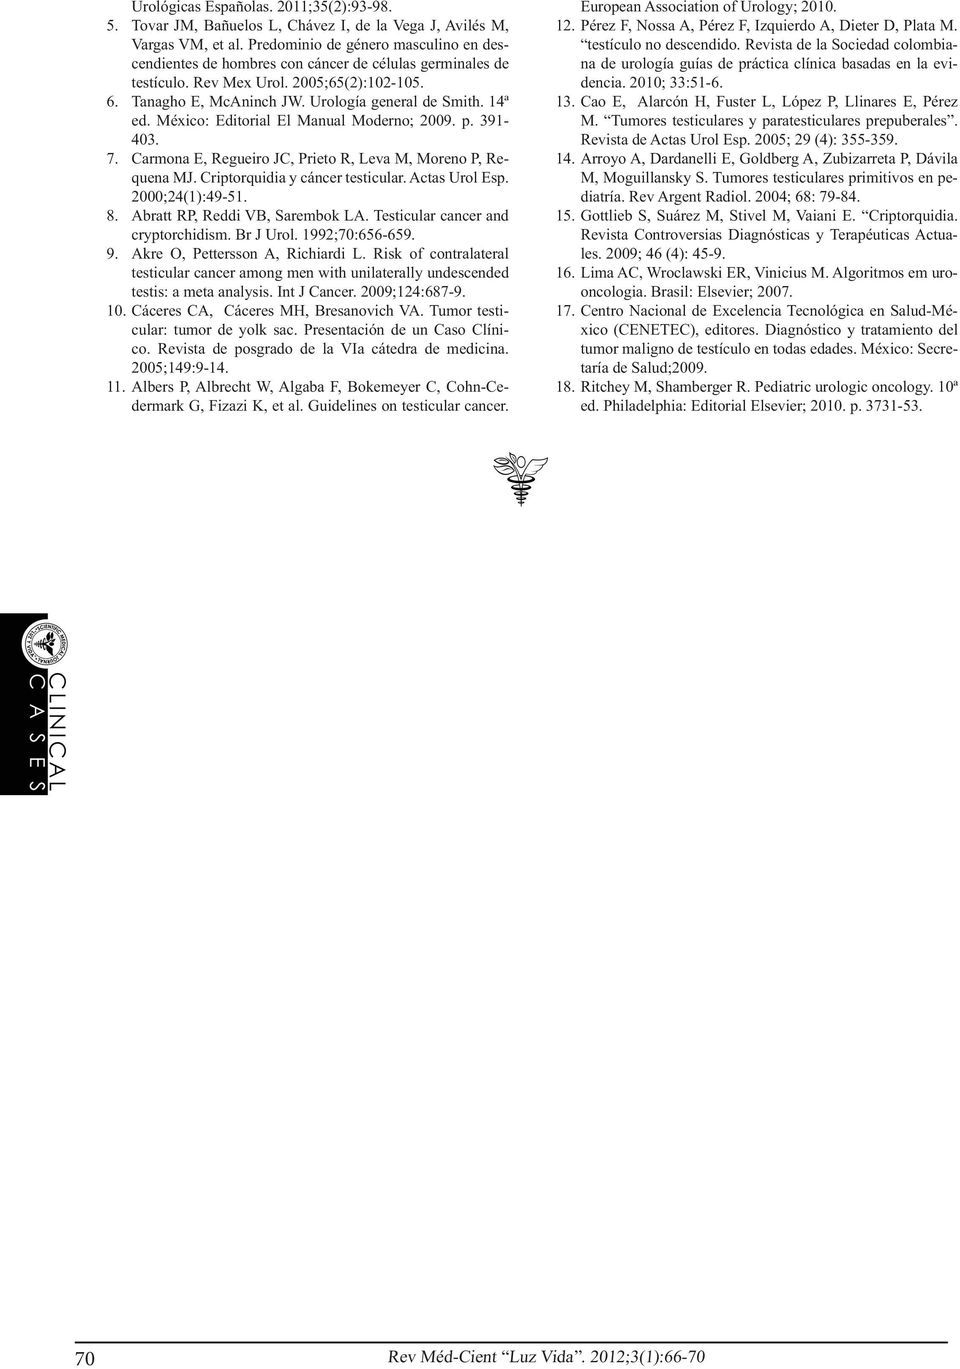 14ª ed. México: Editorial El Manual Moderno; 2009. p. 391-403. 7. Carmona E, Regueiro JC, Prieto R, Leva M, Moreno P, Requena MJ. Criptorquidia y cáncer testicular. Actas Urol Esp. 2000;24(1):49-51.